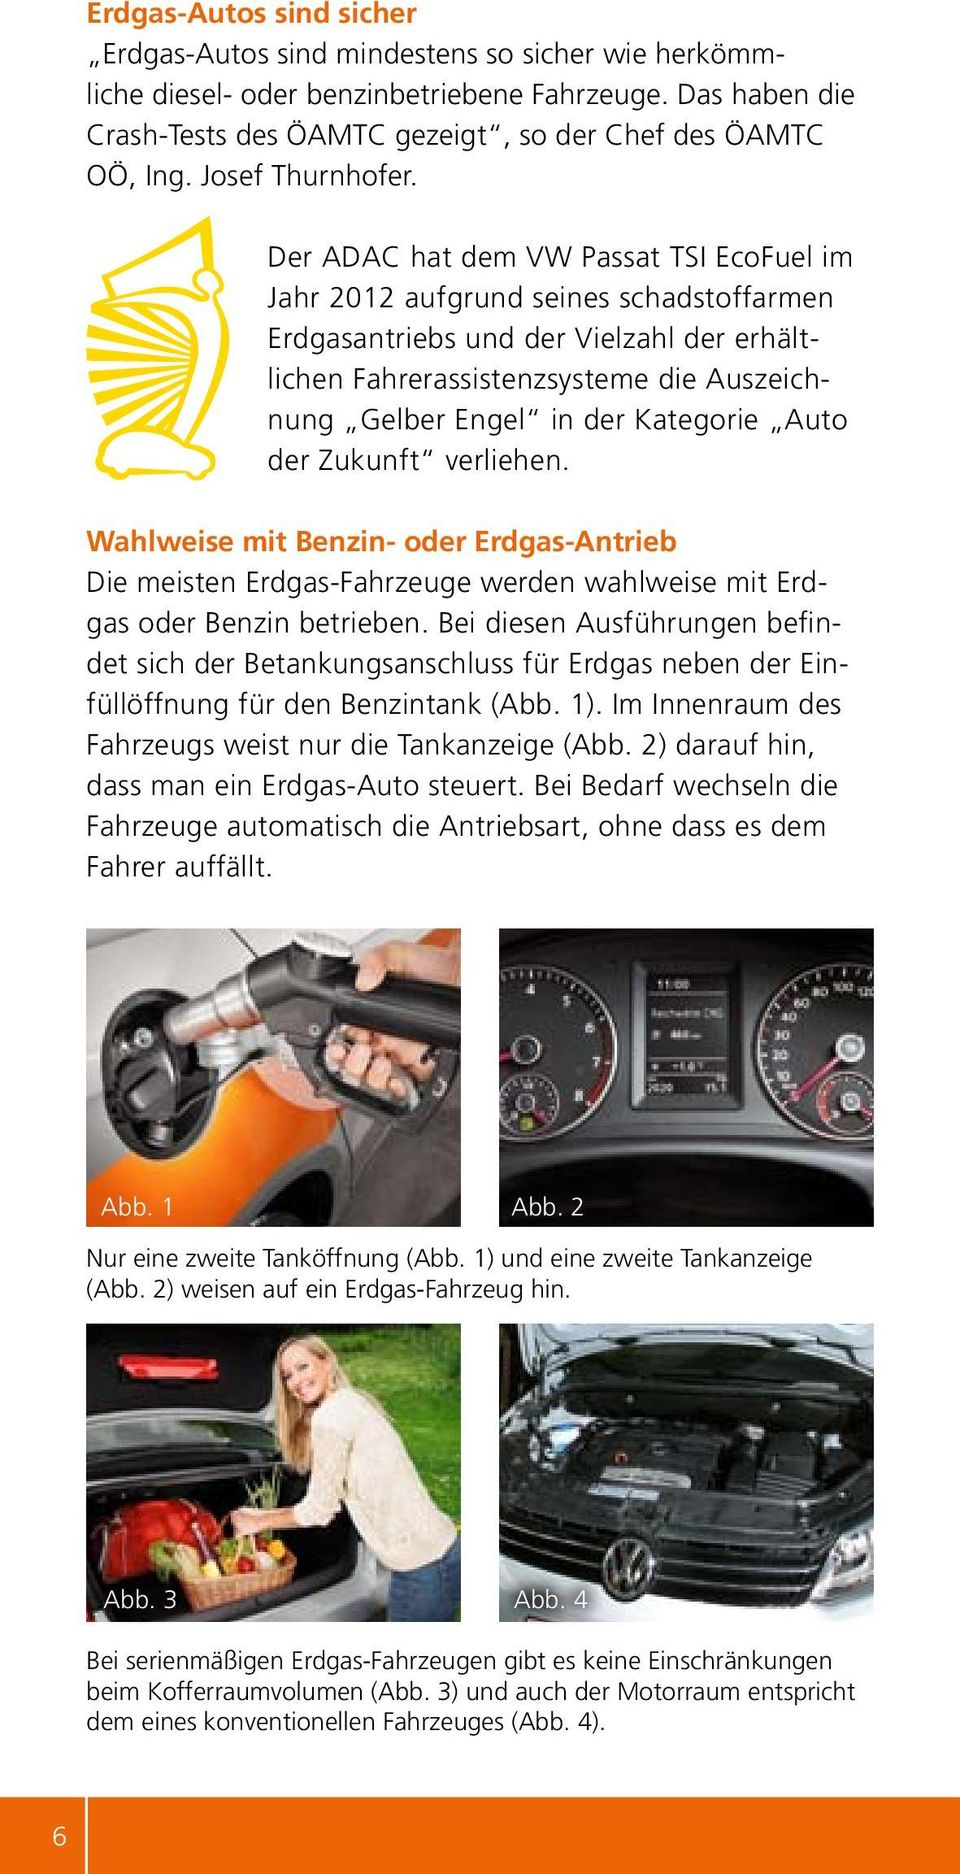 Der ADAC hat dem VW Passat TSI EcoFuel im Jahr 2012 aufgrund seines schadstoffarmen Erdgasantriebs und der Vielzahl der erhältlichen Fahrerassistenzsysteme die Auszeichnung Gelber Engel in der